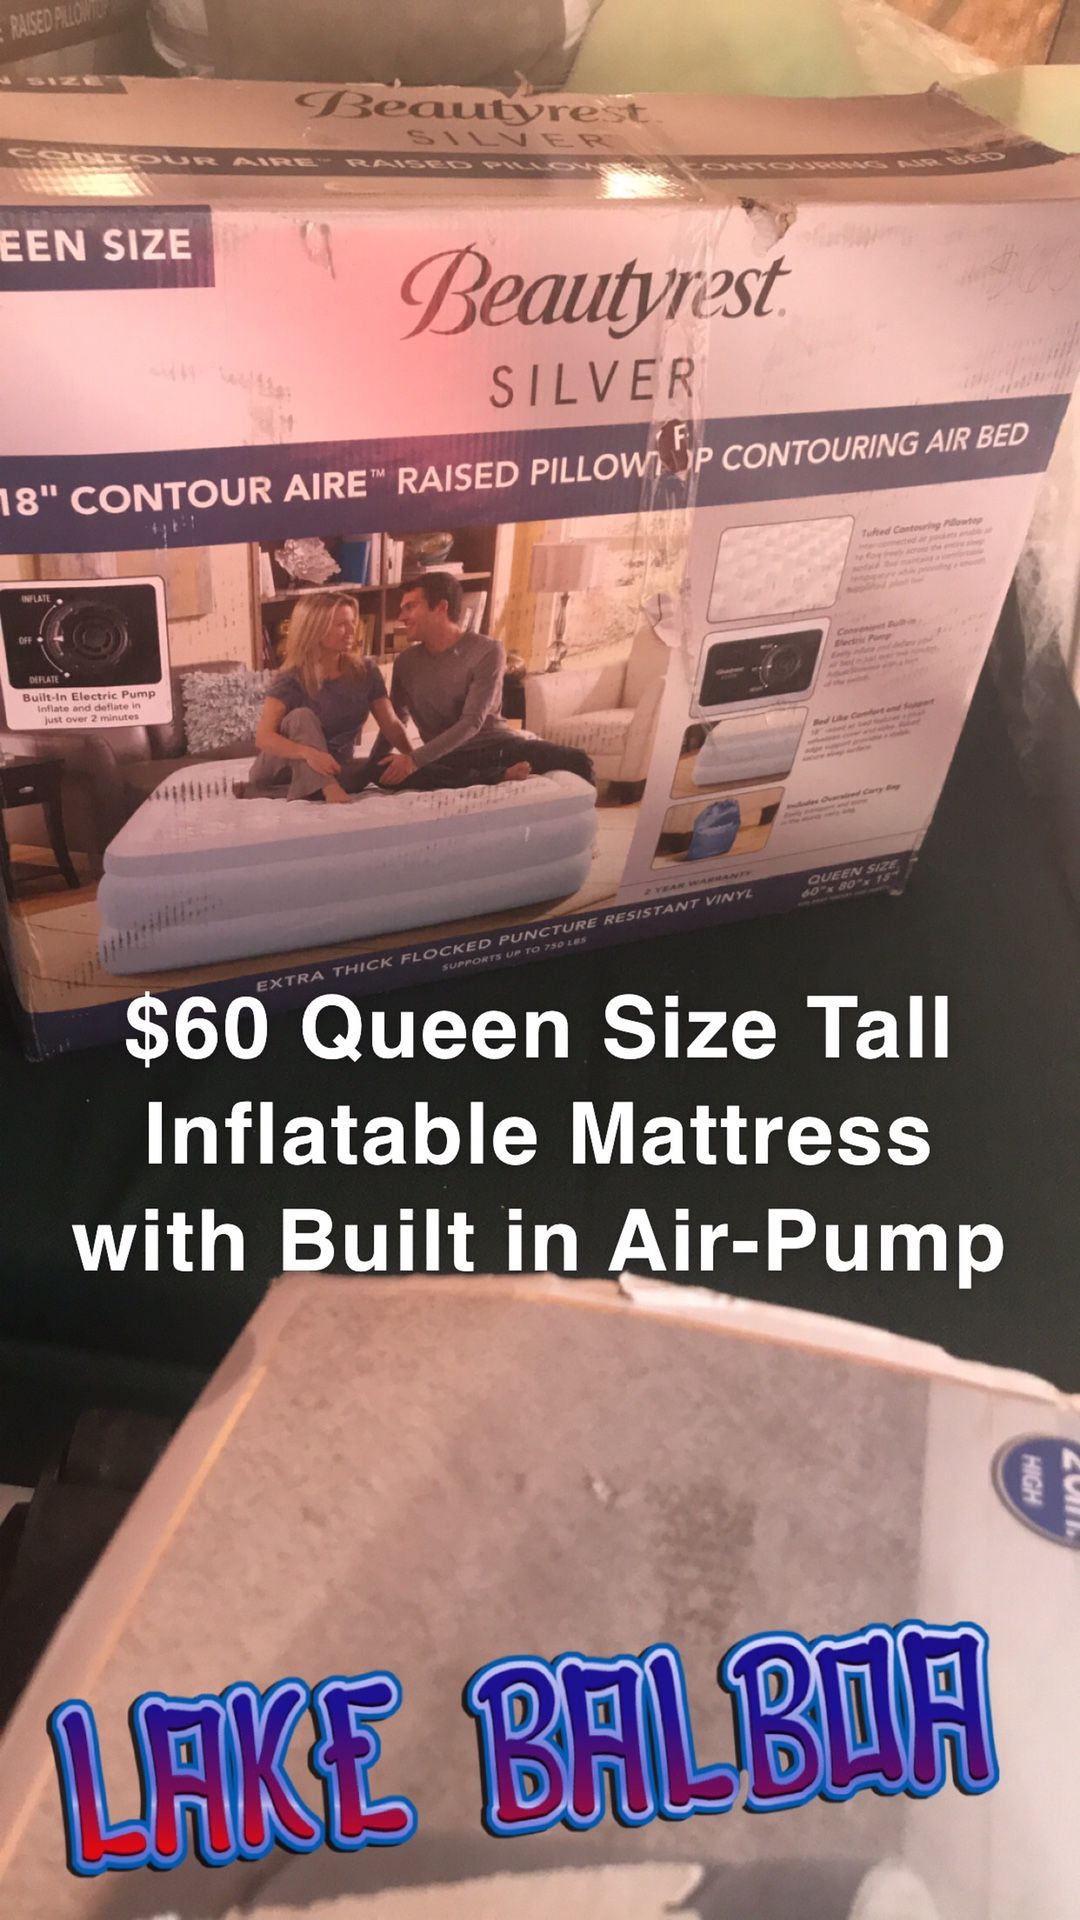 Queen size tall inflatable mattress